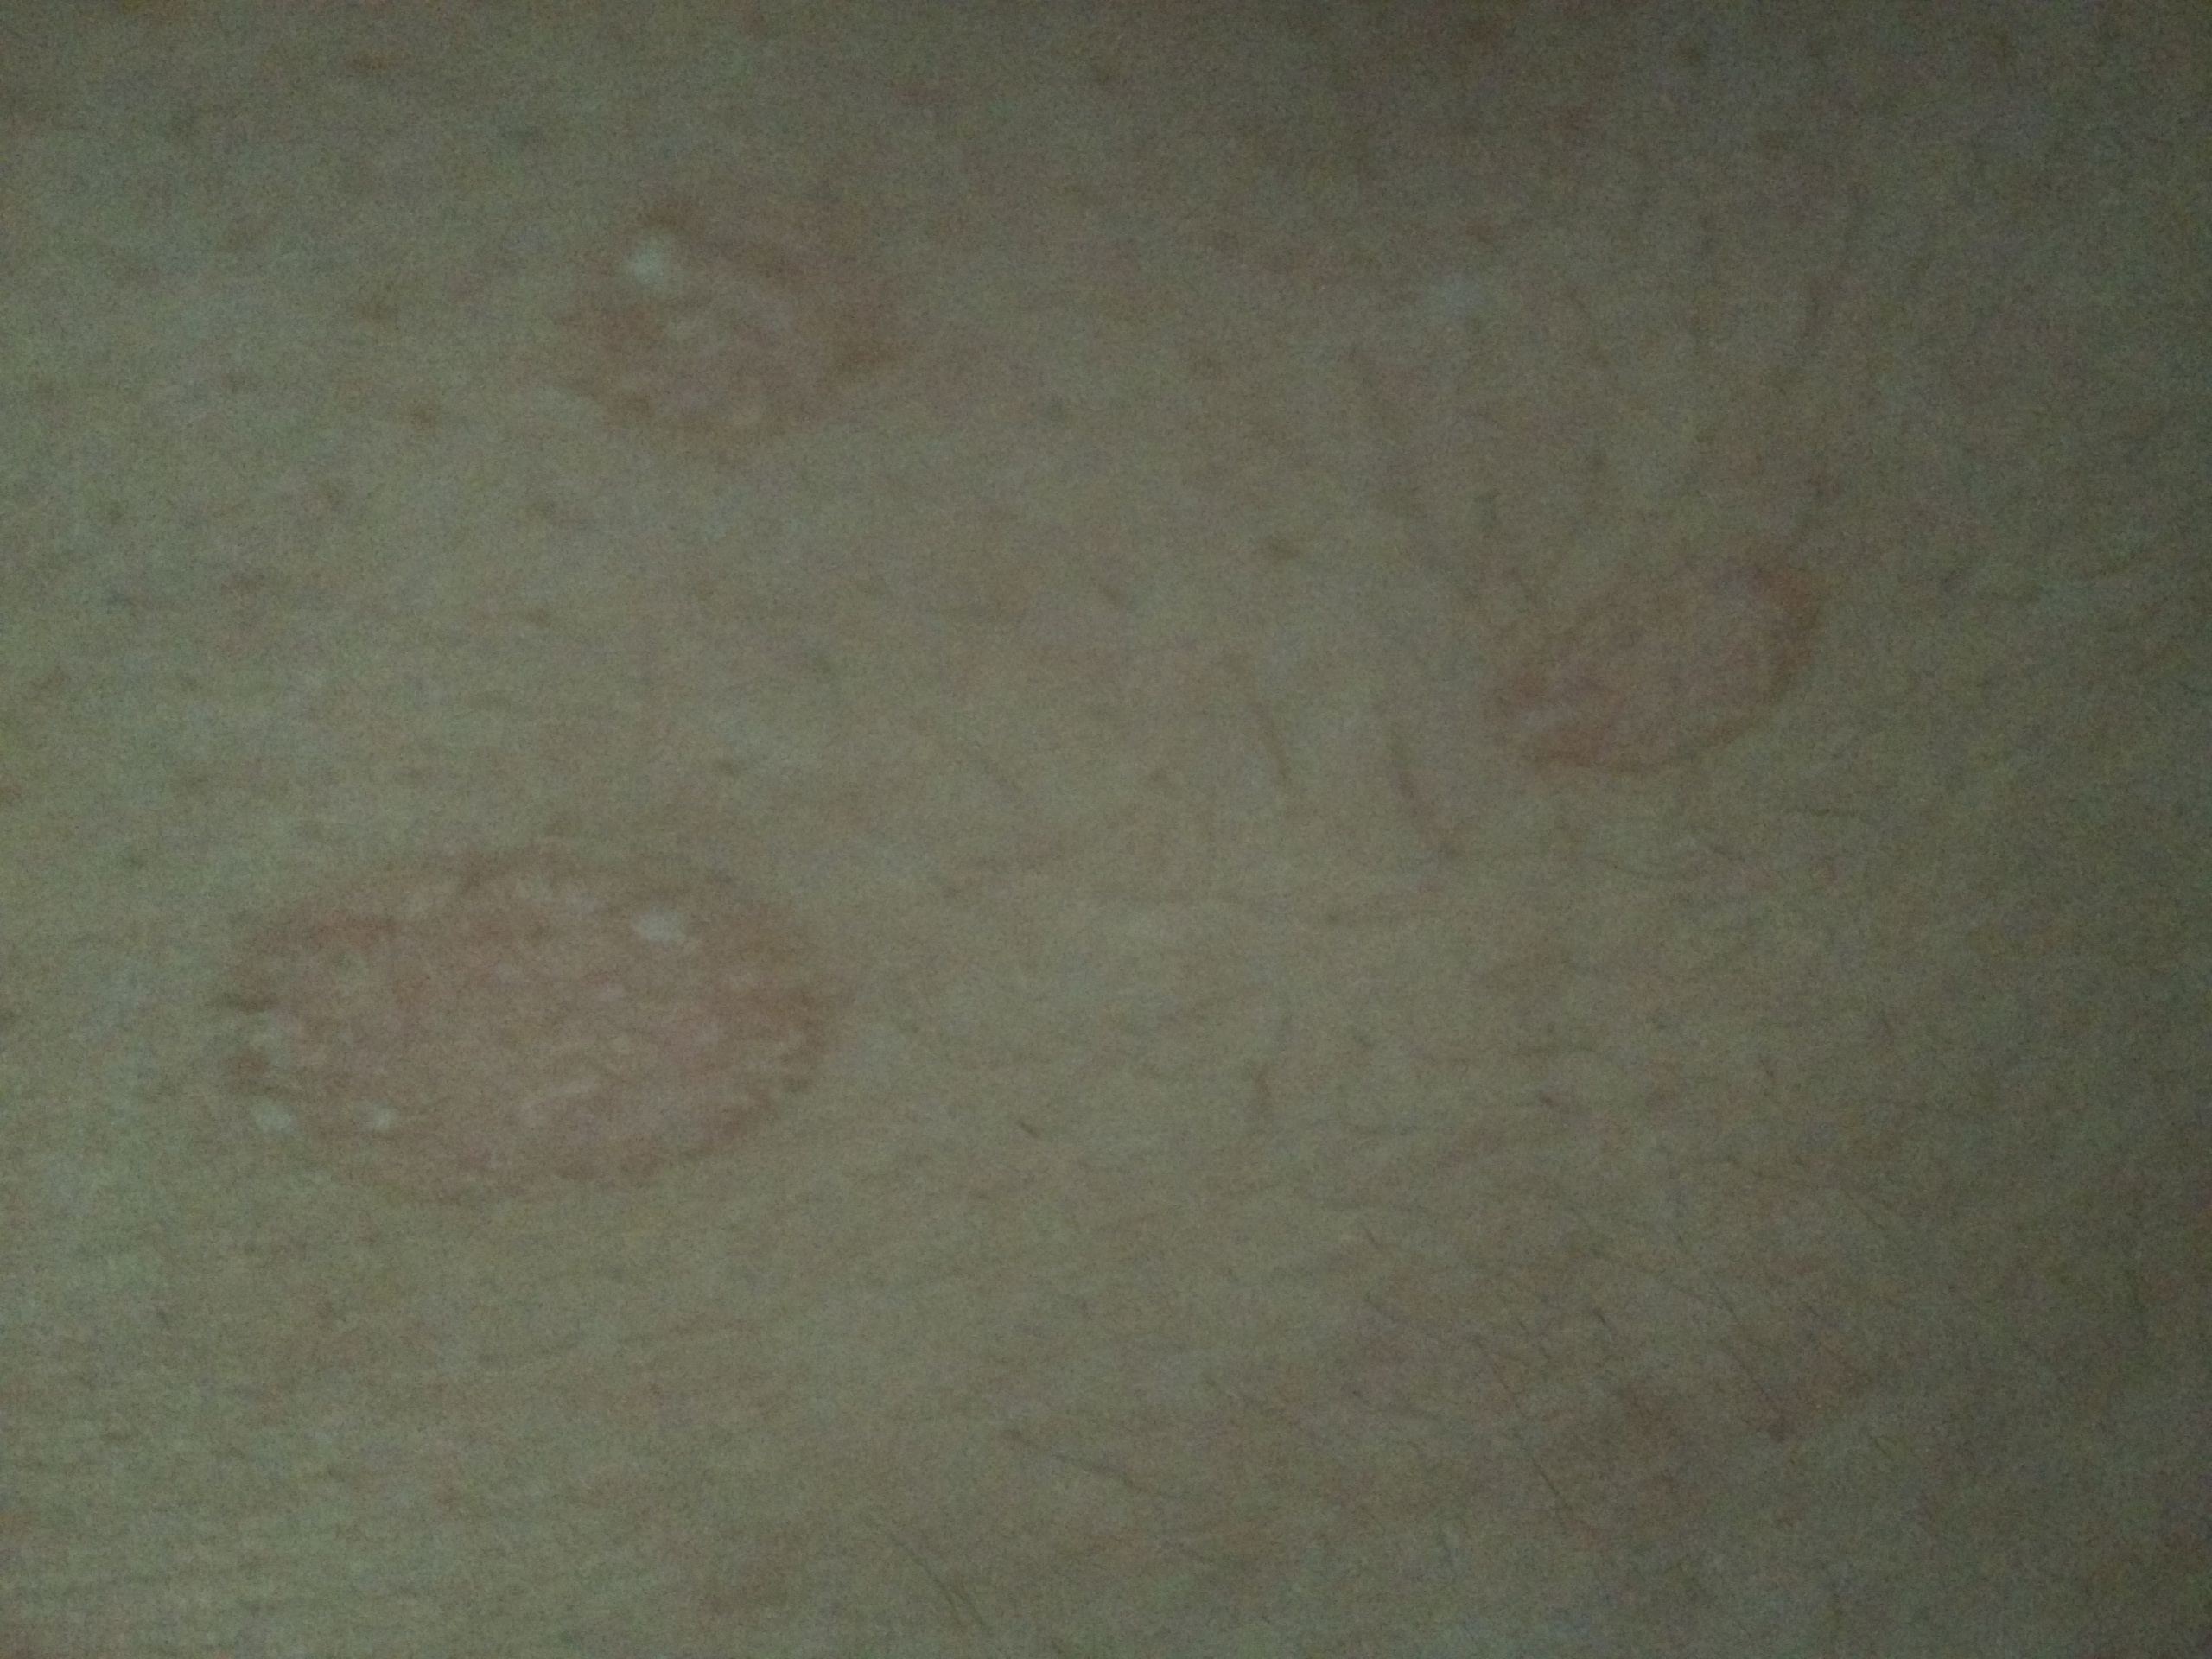 首页 皮肤性病科 皮肤科身上起了好多小红圈,越来越多,里面还会脱皮.